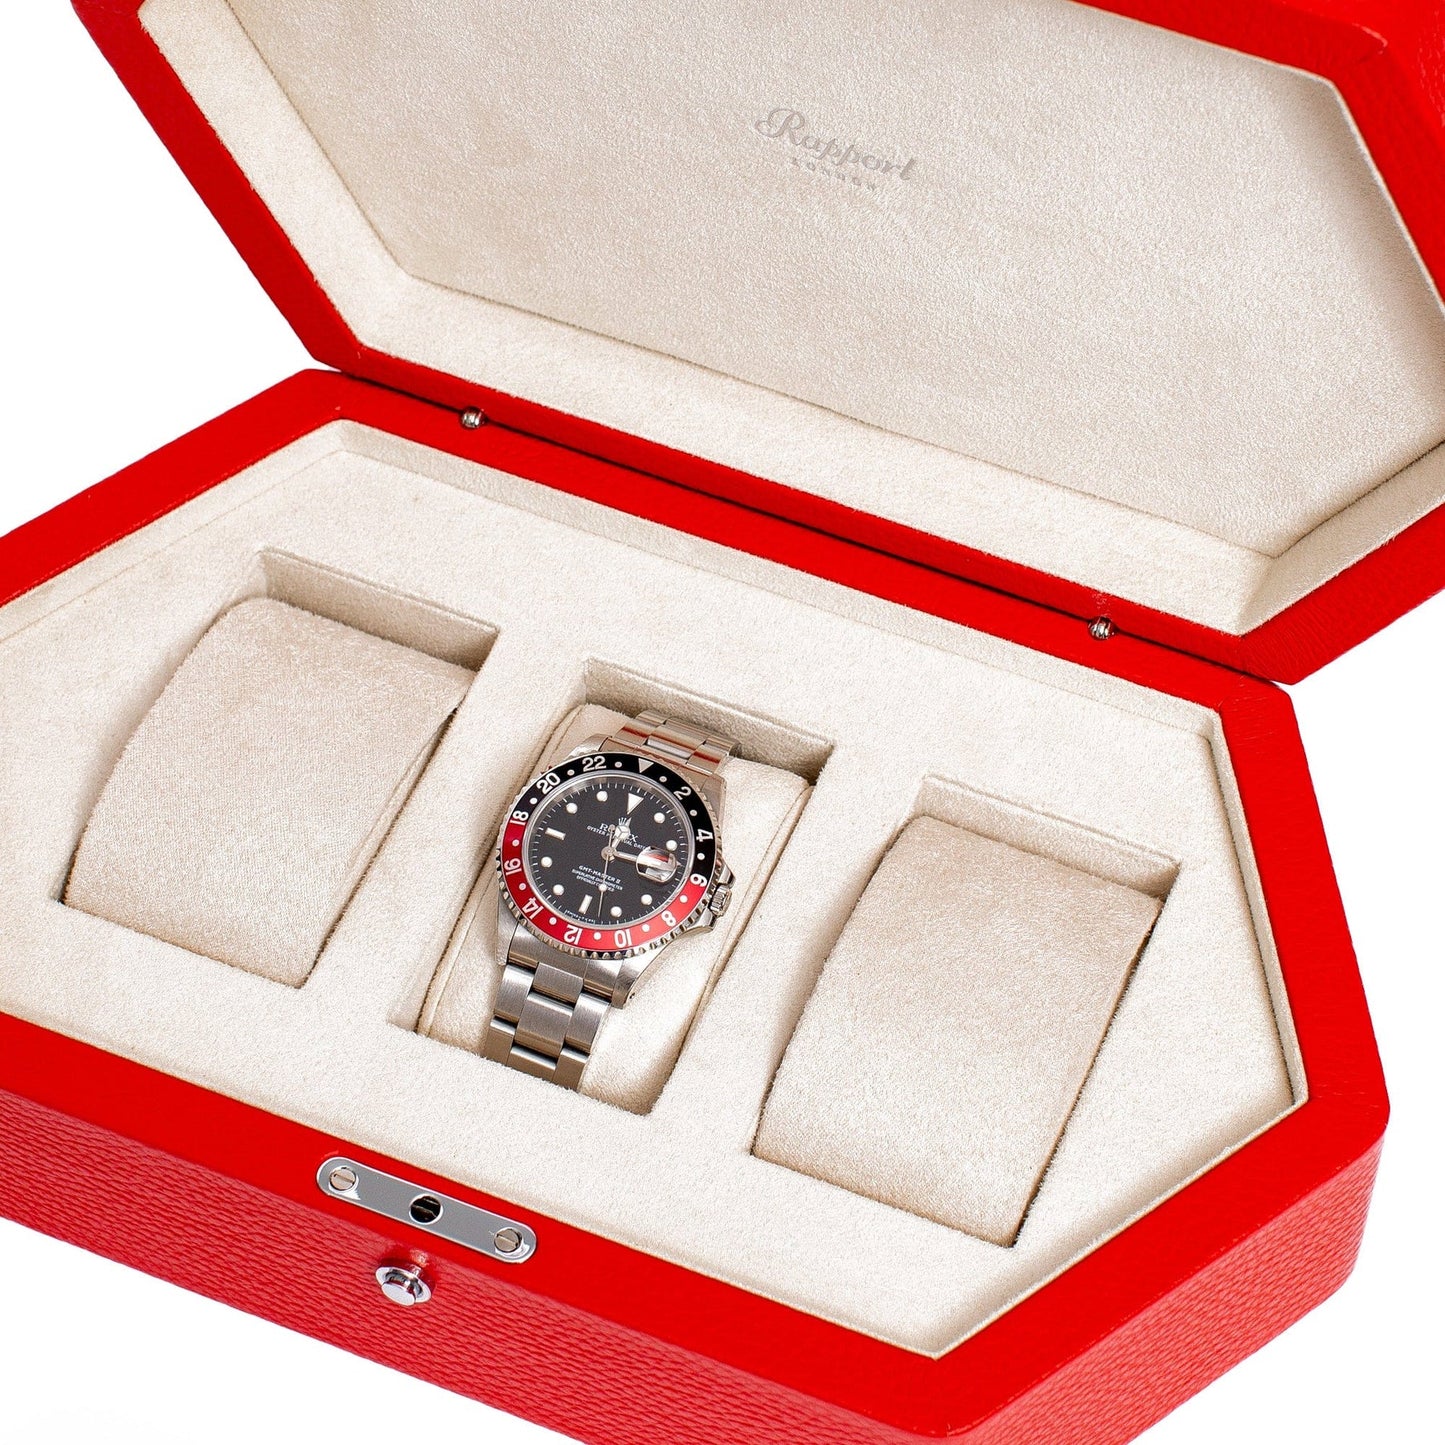 Portobello 3 Watch Box - Red